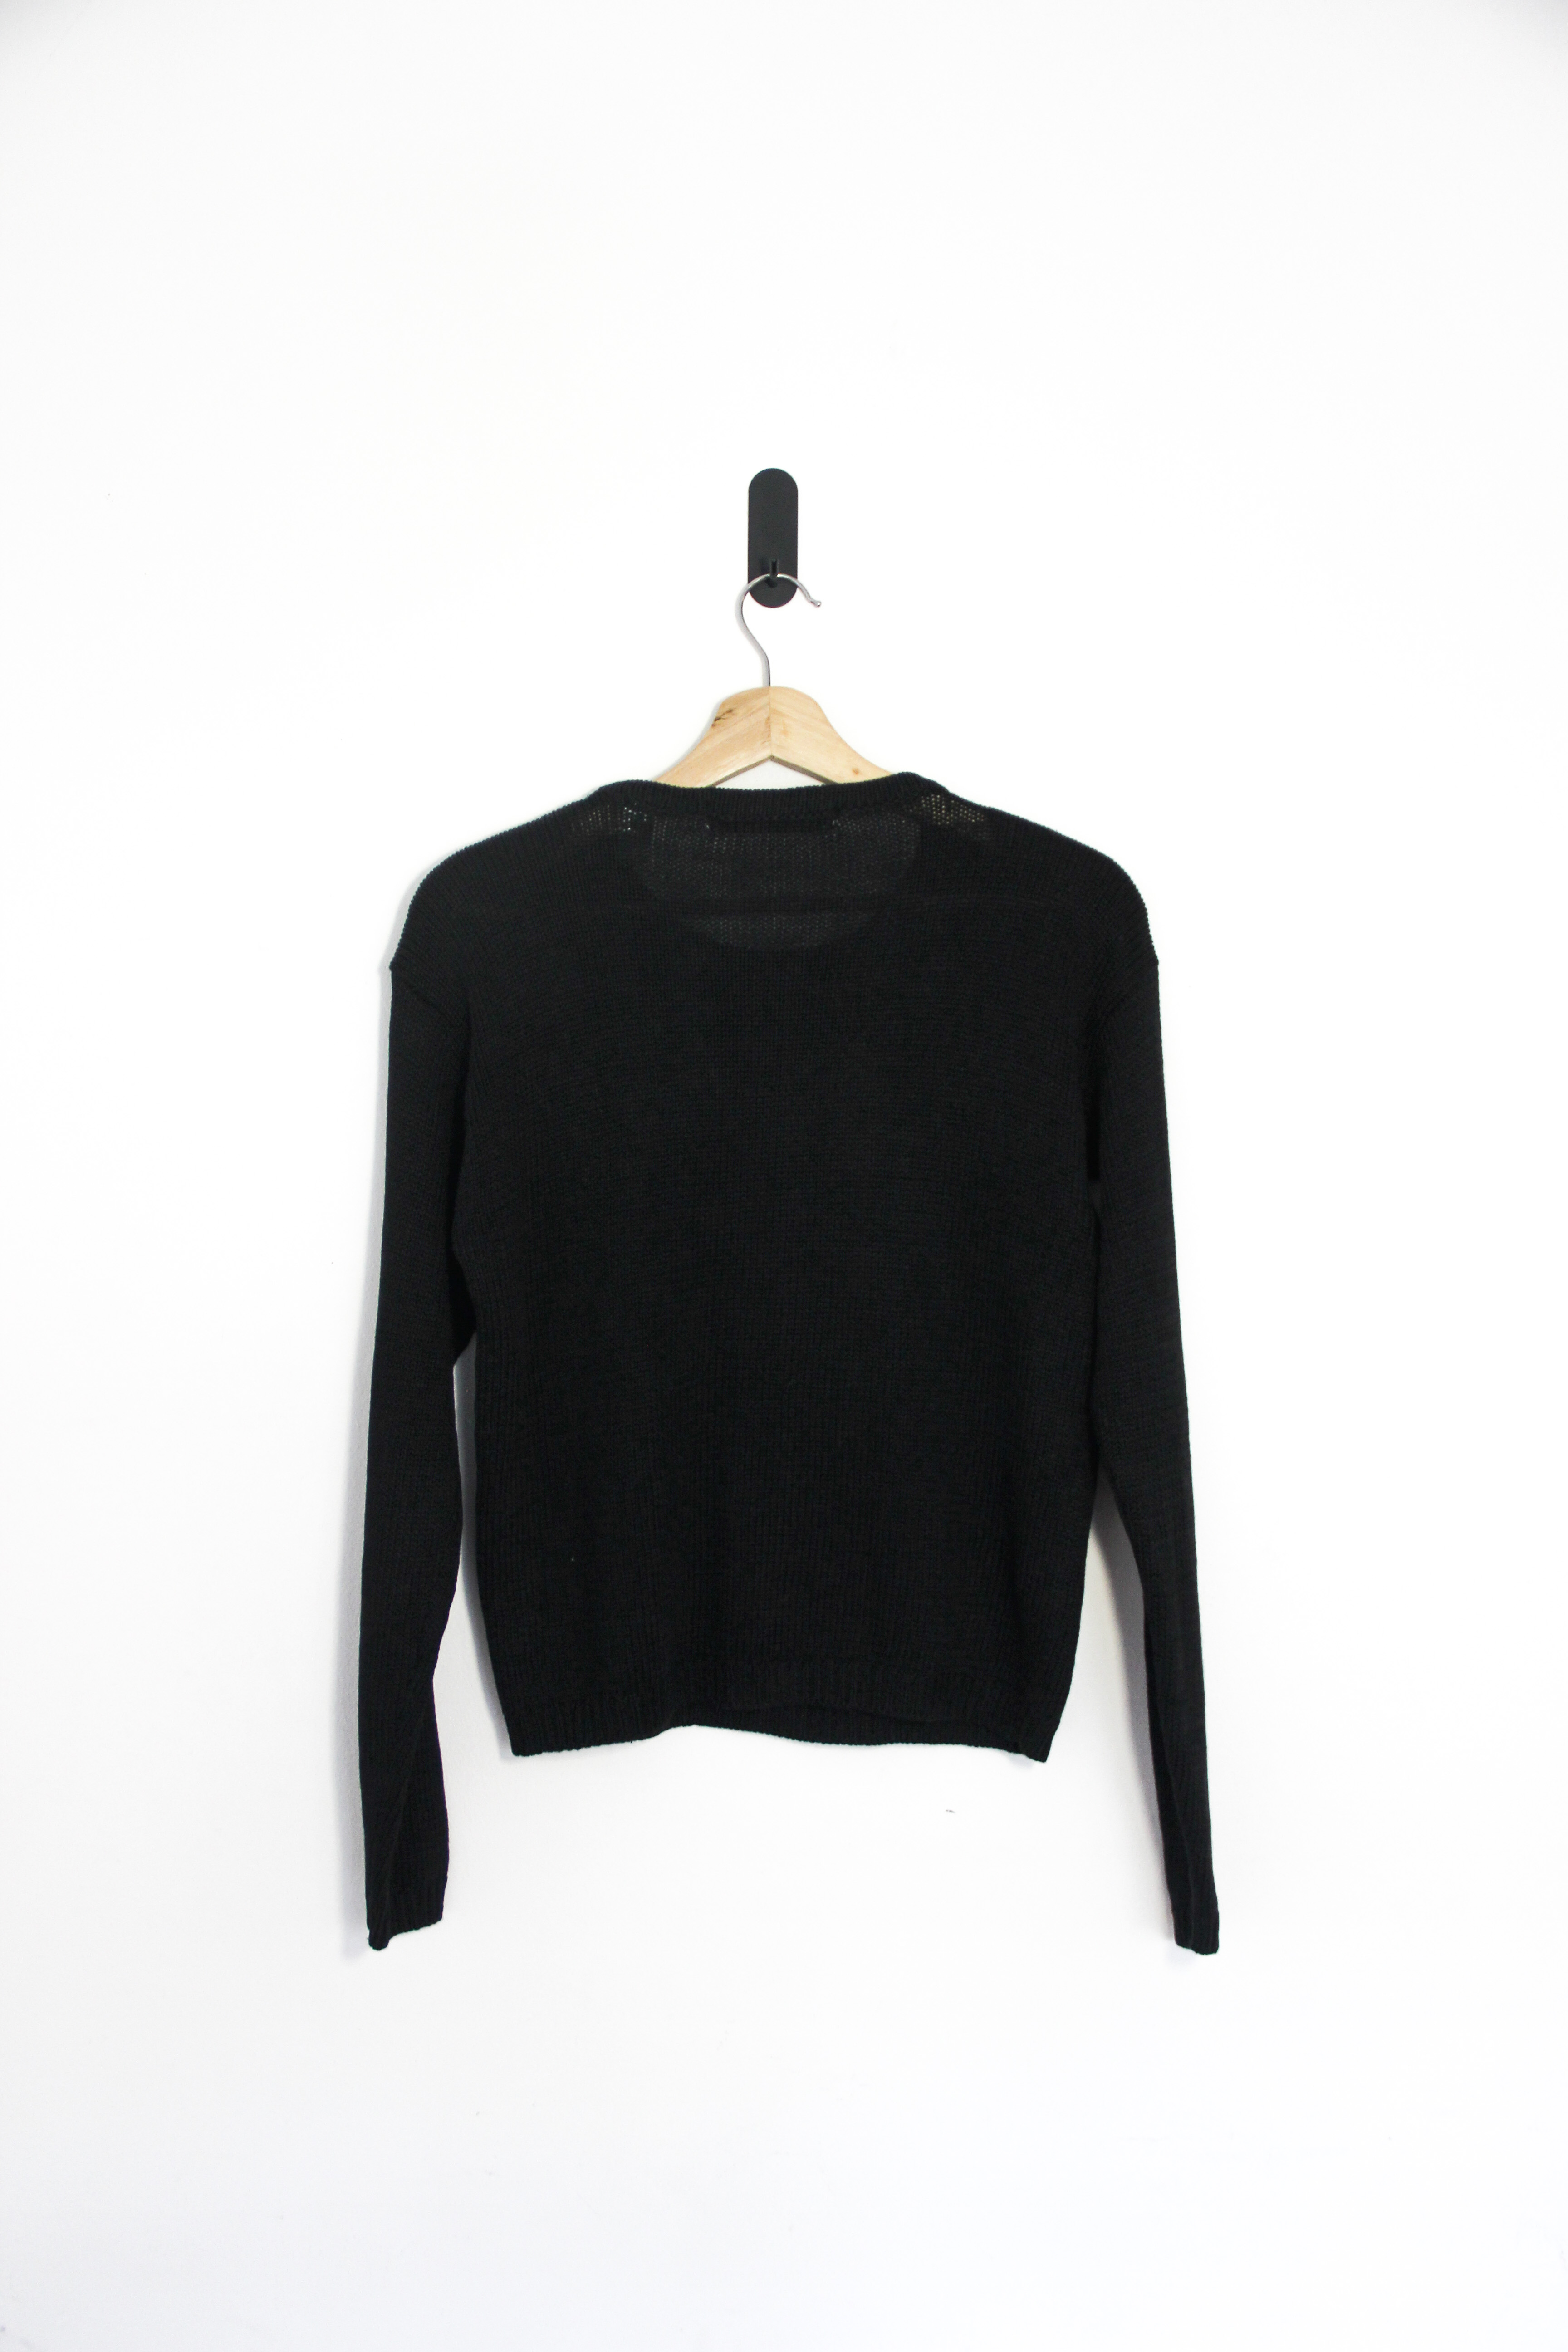 Sweater negro bordado shiny